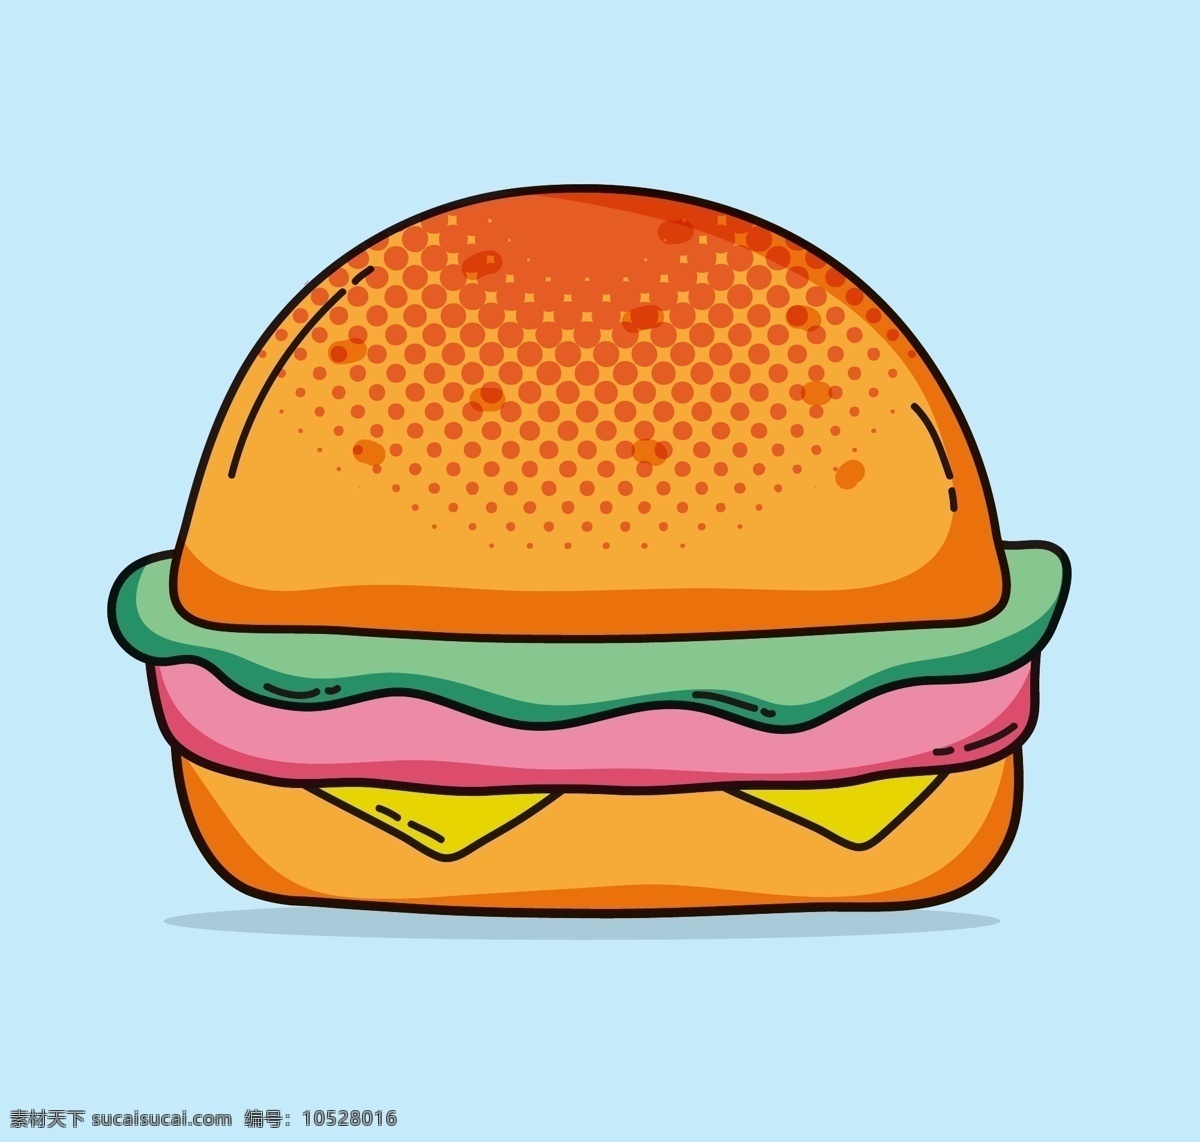 手绘汉堡 汉堡包 食物 薯条 热狗 手绘画 快餐 hamburger 生活百科 餐饮美食 卡通矢量图 矢量图 手绘 手绘素材 背景 可爱 汉堡素材 圆汉堡 元素